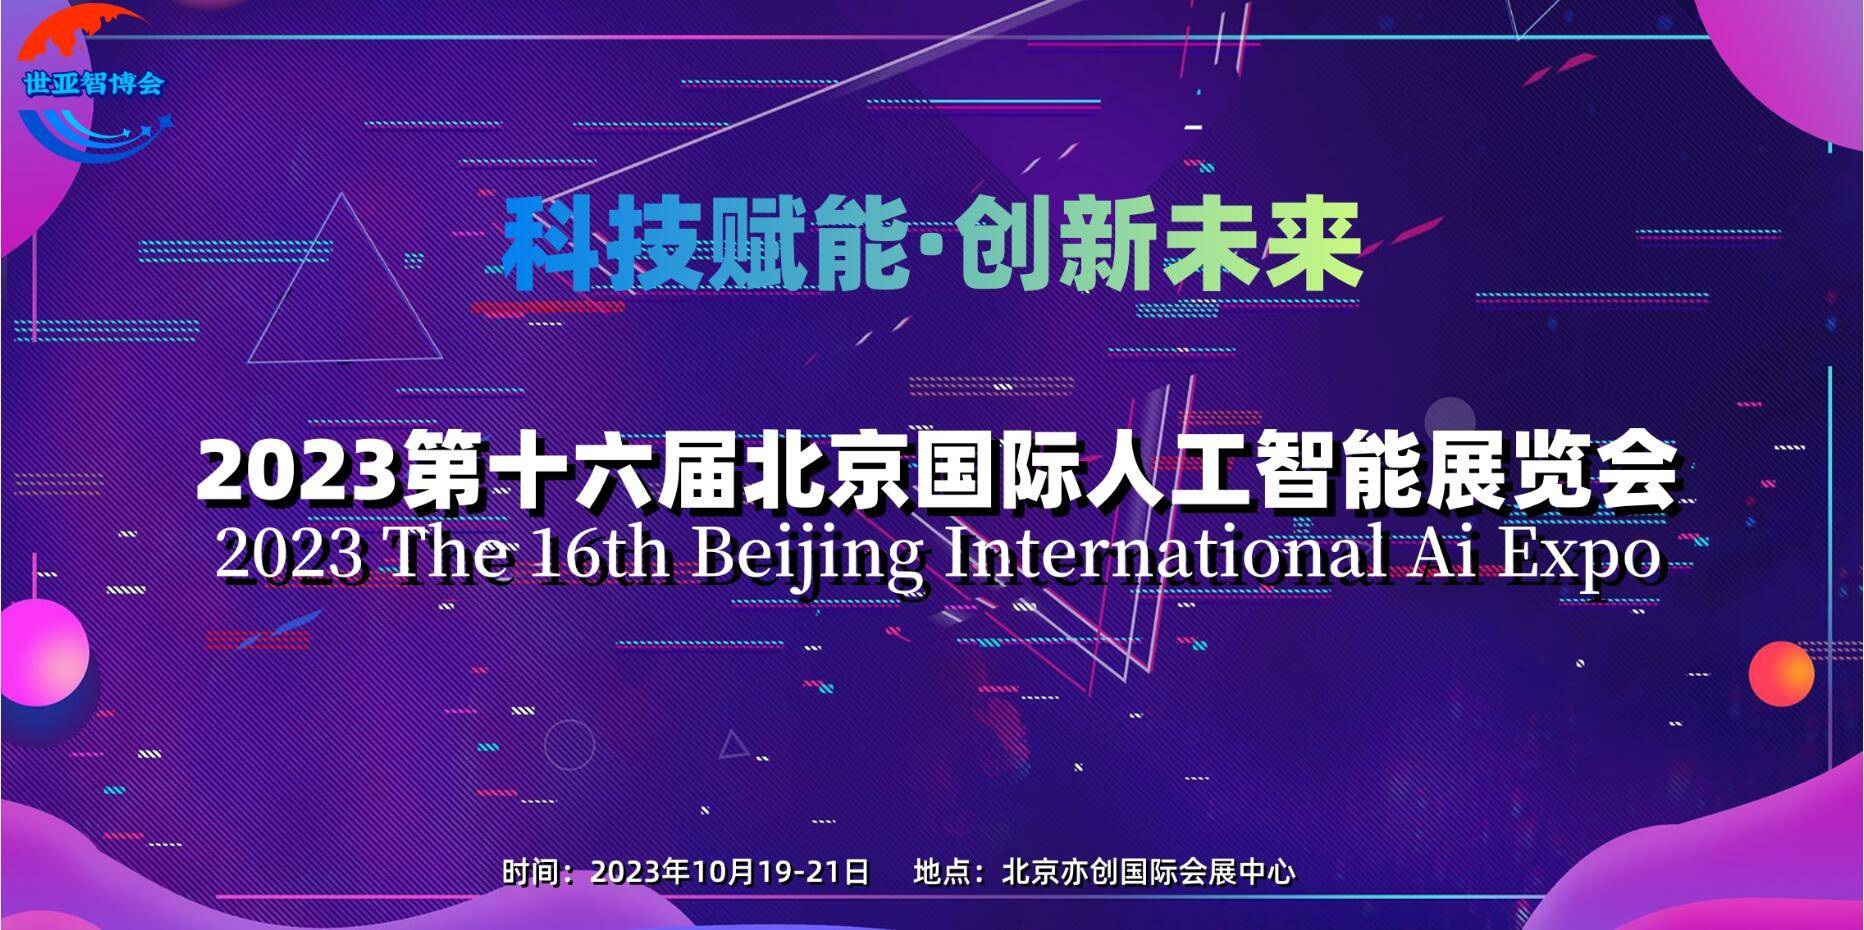 023第十六届北京国际人工智能展览会"